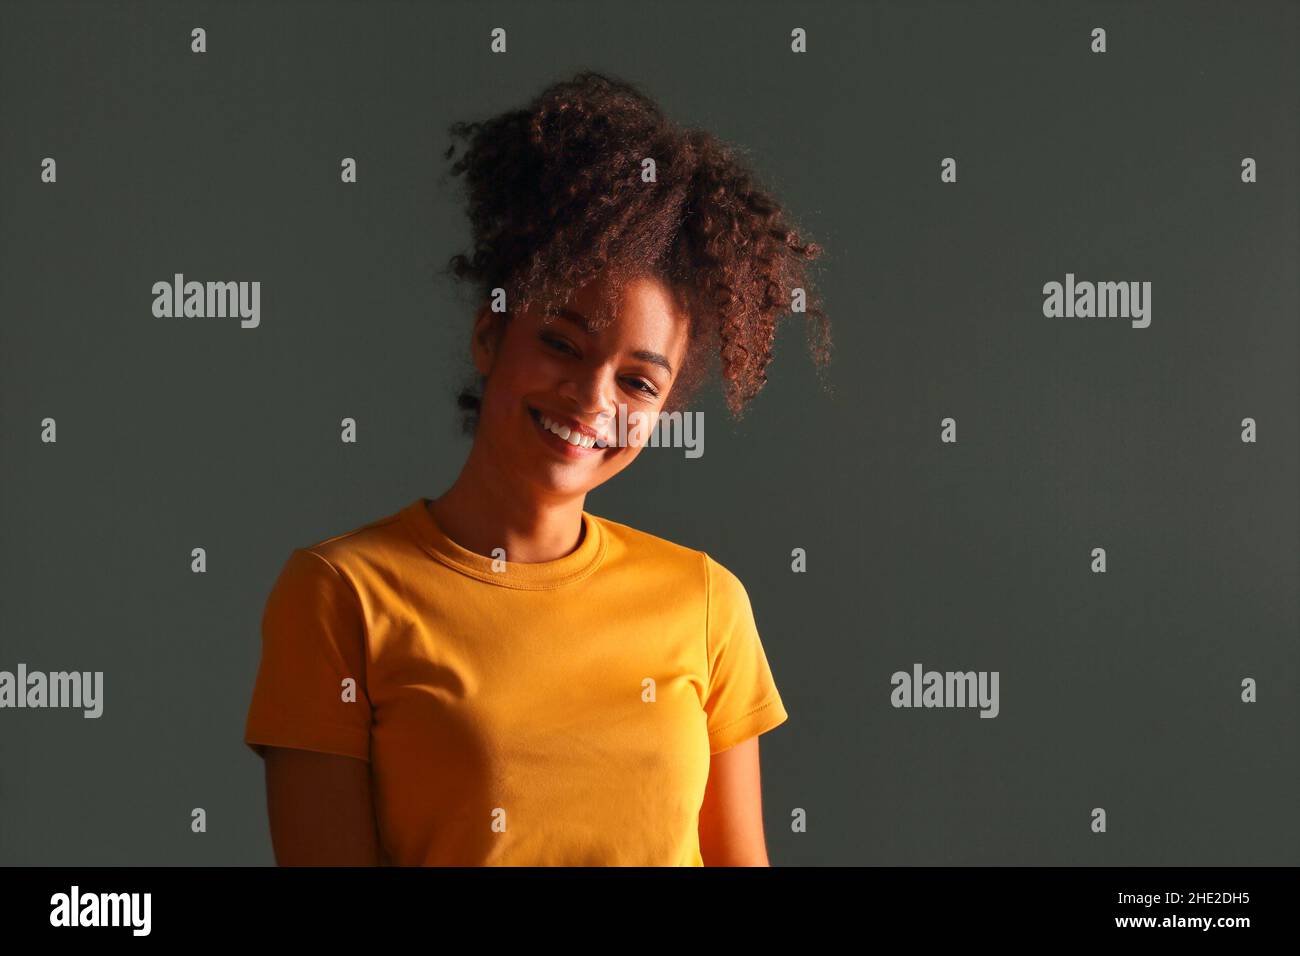 Bella ragazza di etnia afroamericana felice scuro con pelle in maglia gialla che alza la mano nel saluto mentre guarda in macchina fotografica con piacevole sorriso, p Foto Stock